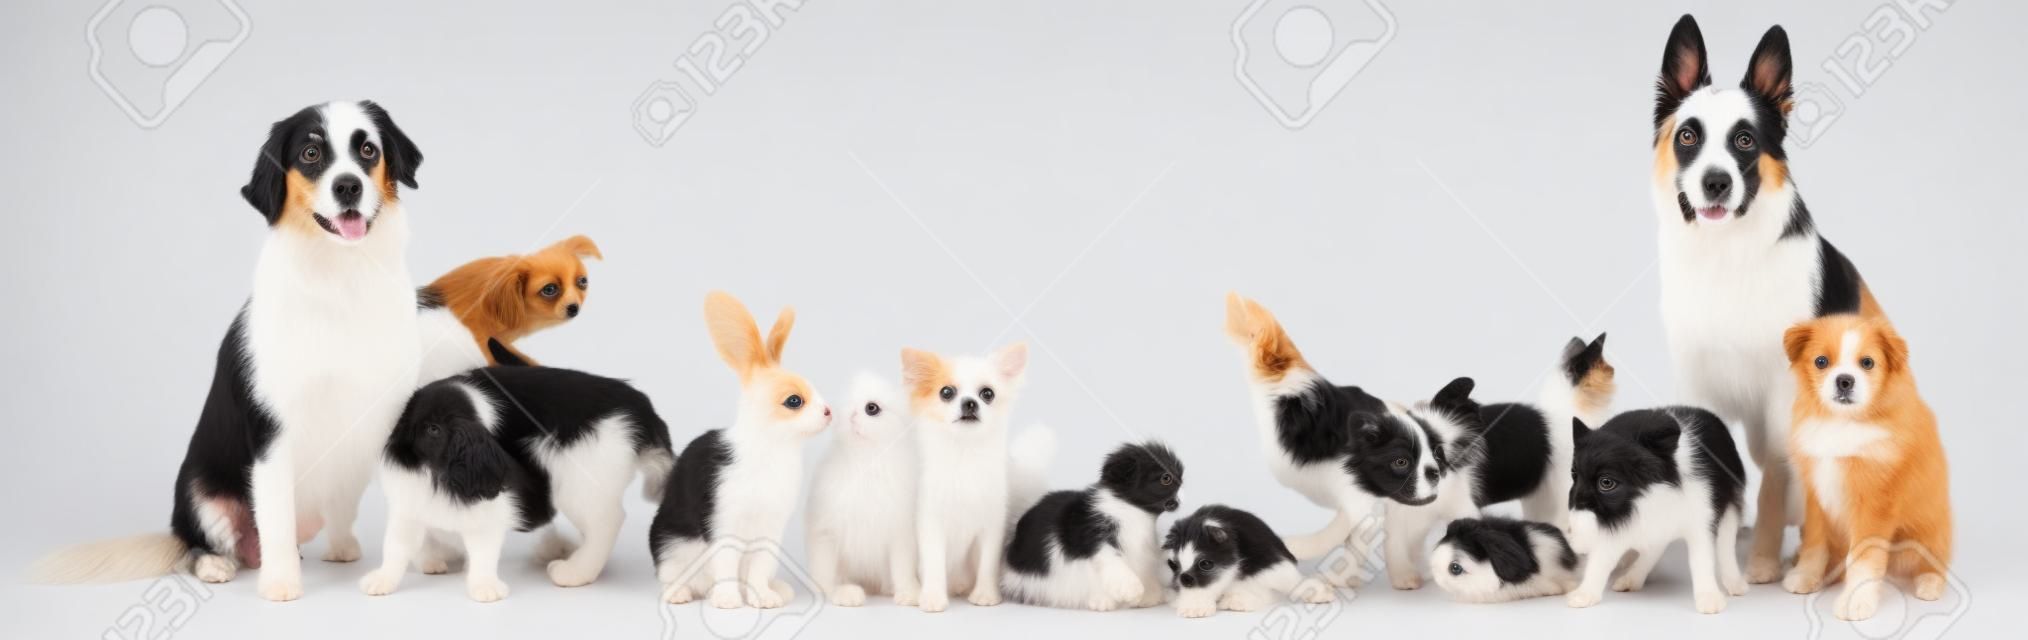 grupa zwierzę przed białym tle